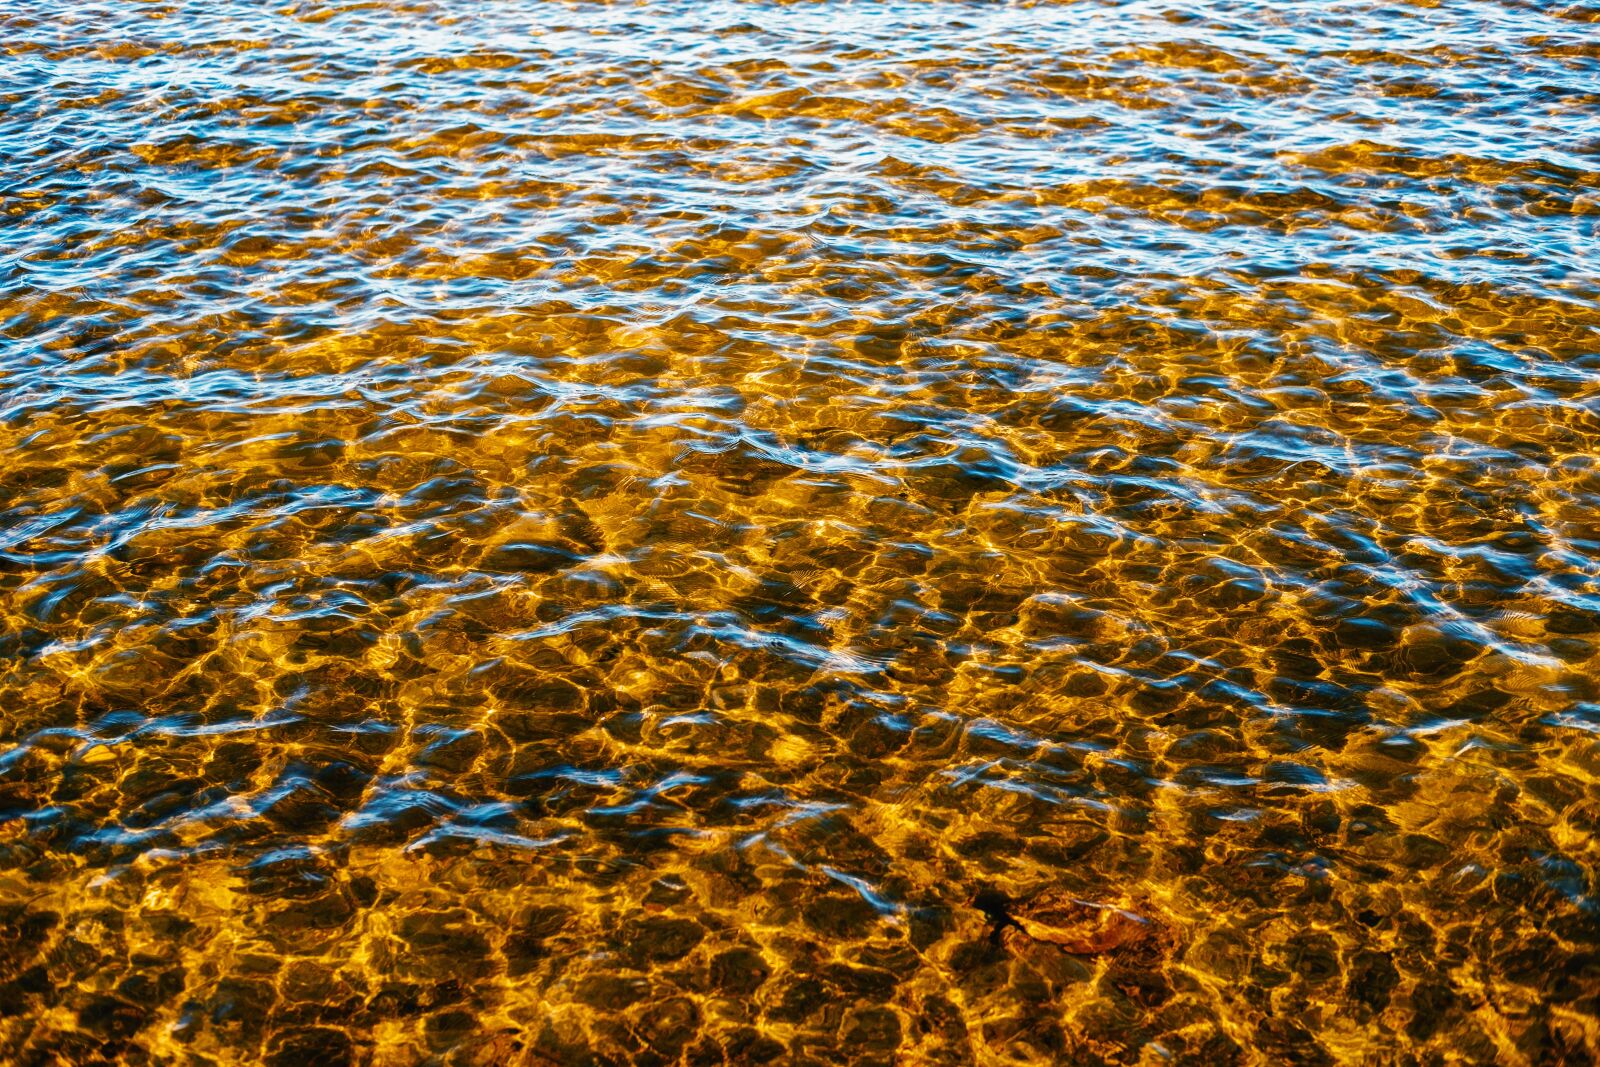 Fujifilm XF 35mm F2 R WR sample photo. Water, sea, lake photography